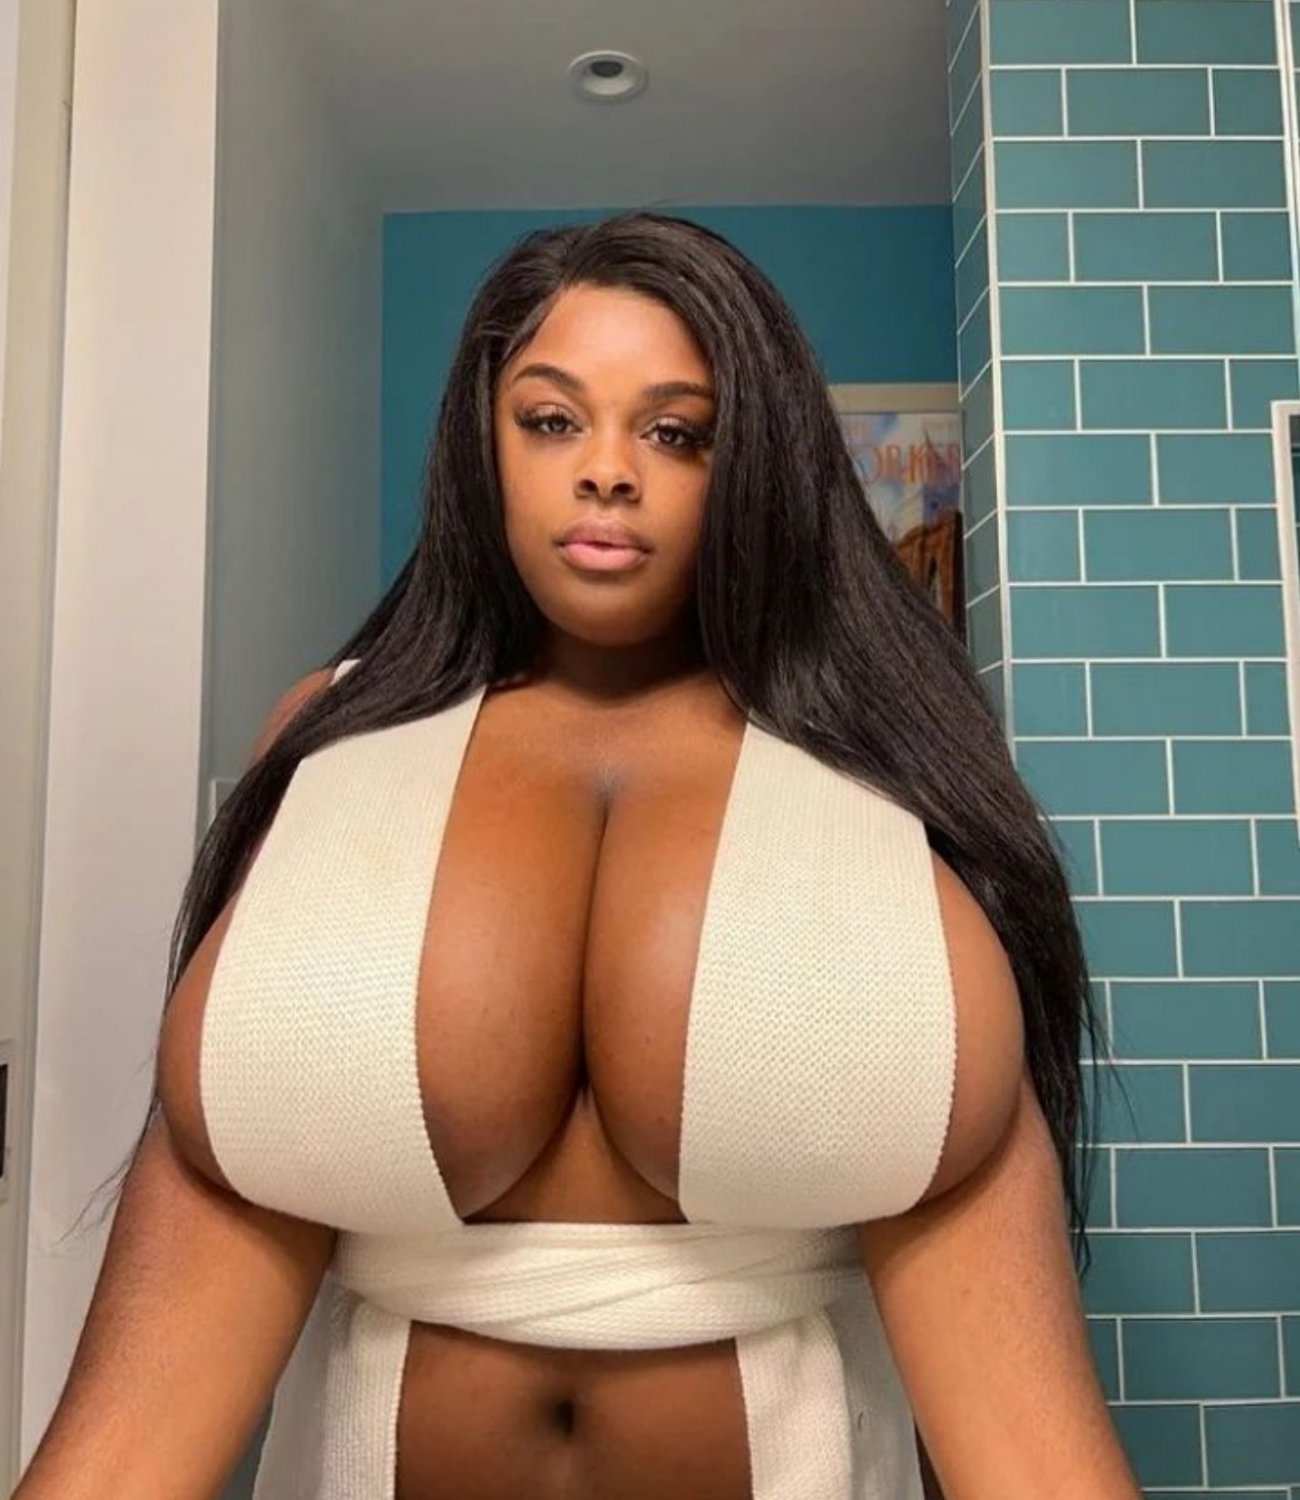 caitlyn valdez share busty black women porn photos